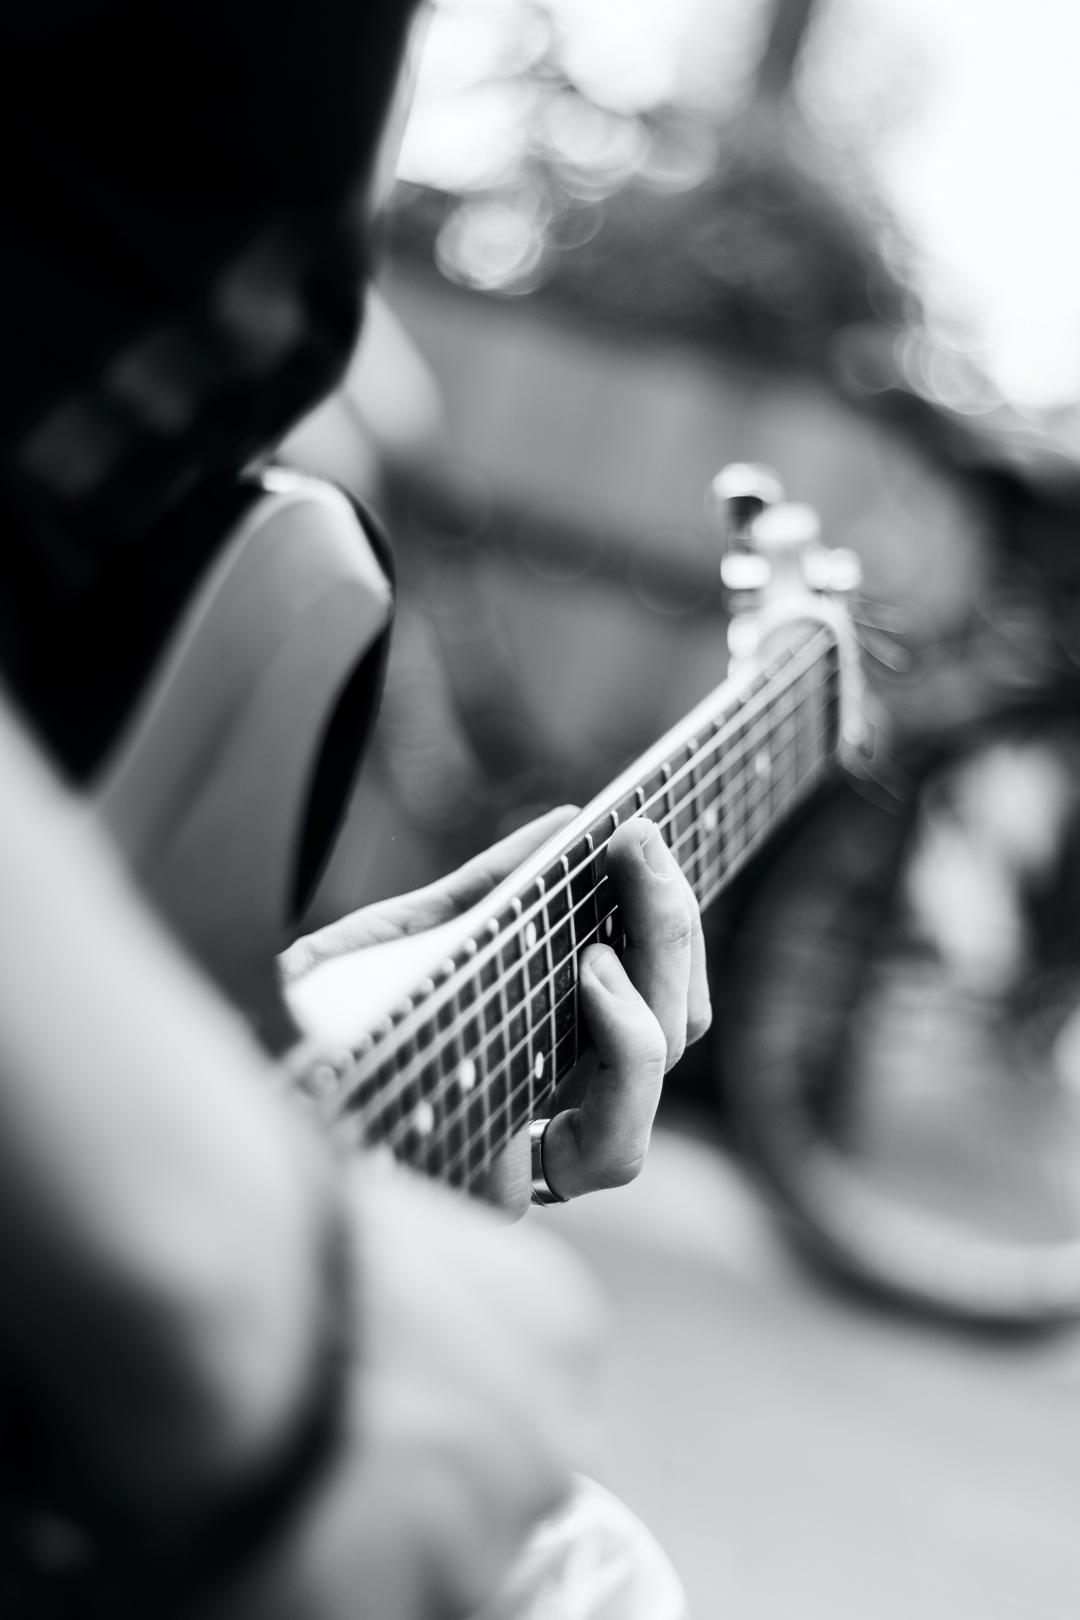 弹电吉他的男性吉他弹奏者 库存图片. 图片 包括有 男性, 偶然, 使用, 吉他弹奏者, 人们, 音乐, 中央部位 - 62043141